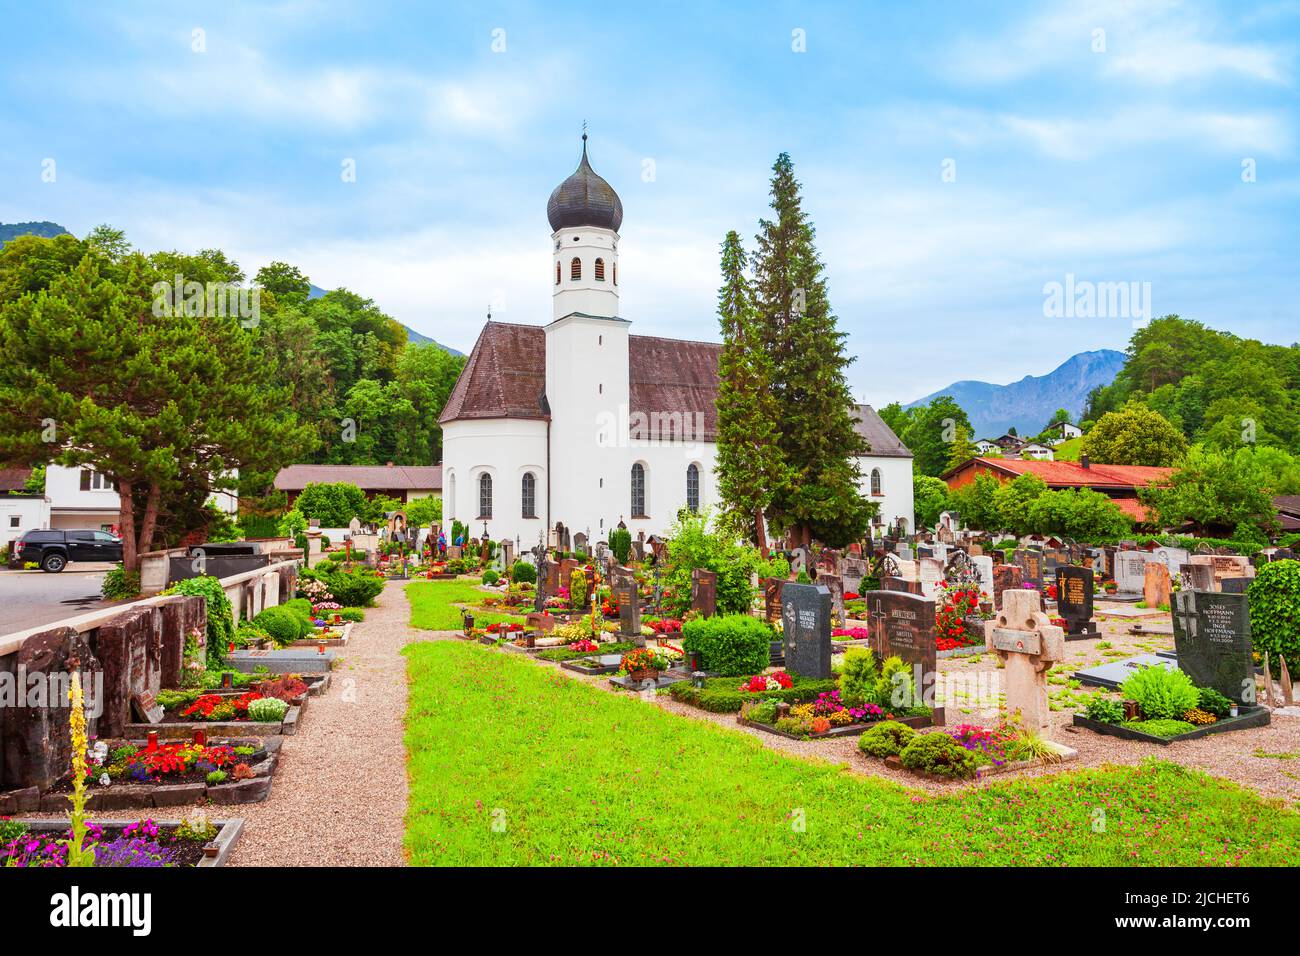 La chiesa parrocchiale cattolica romana di San Michele si trova nella città di Kochel am See presso il Kochelsee o il lago di Kochel in Baviera, Germania Foto Stock